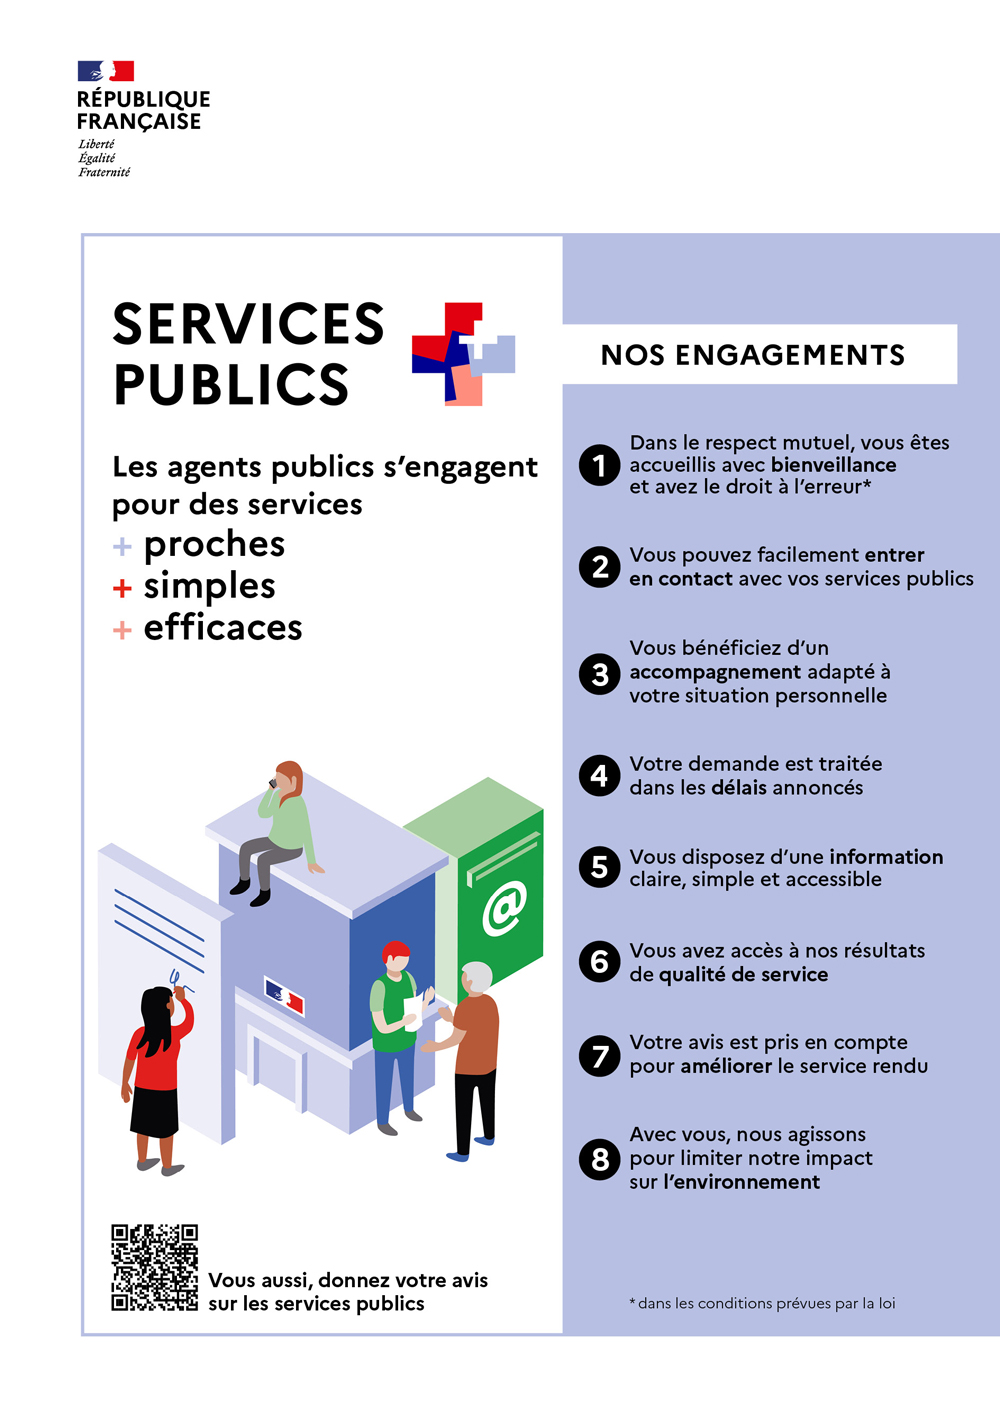 Services publics + : les agents s'engagent pour des services proches, simples, efficaces.